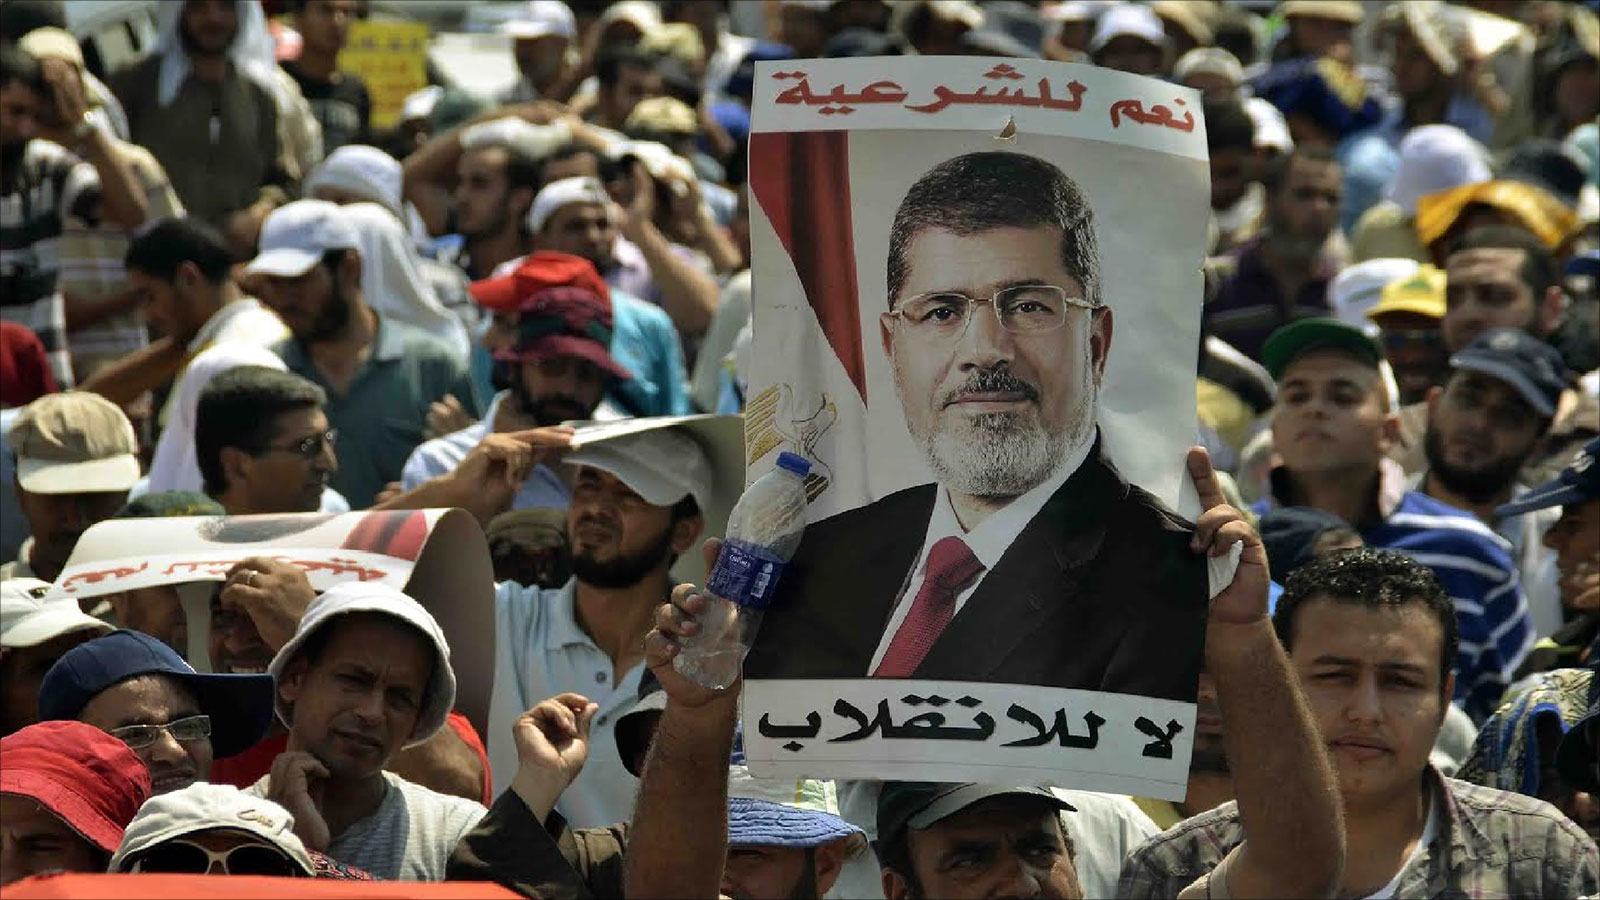 ‪مصر ما تزال تشهد مظاهرات تؤكد على التمسك بالشرعية ورفض الانقلاب‬ مصر ما تزال تشهد مظاهرات تؤكد على التمسك بالشرعية ورفض الانقلاب (الجزيرة)